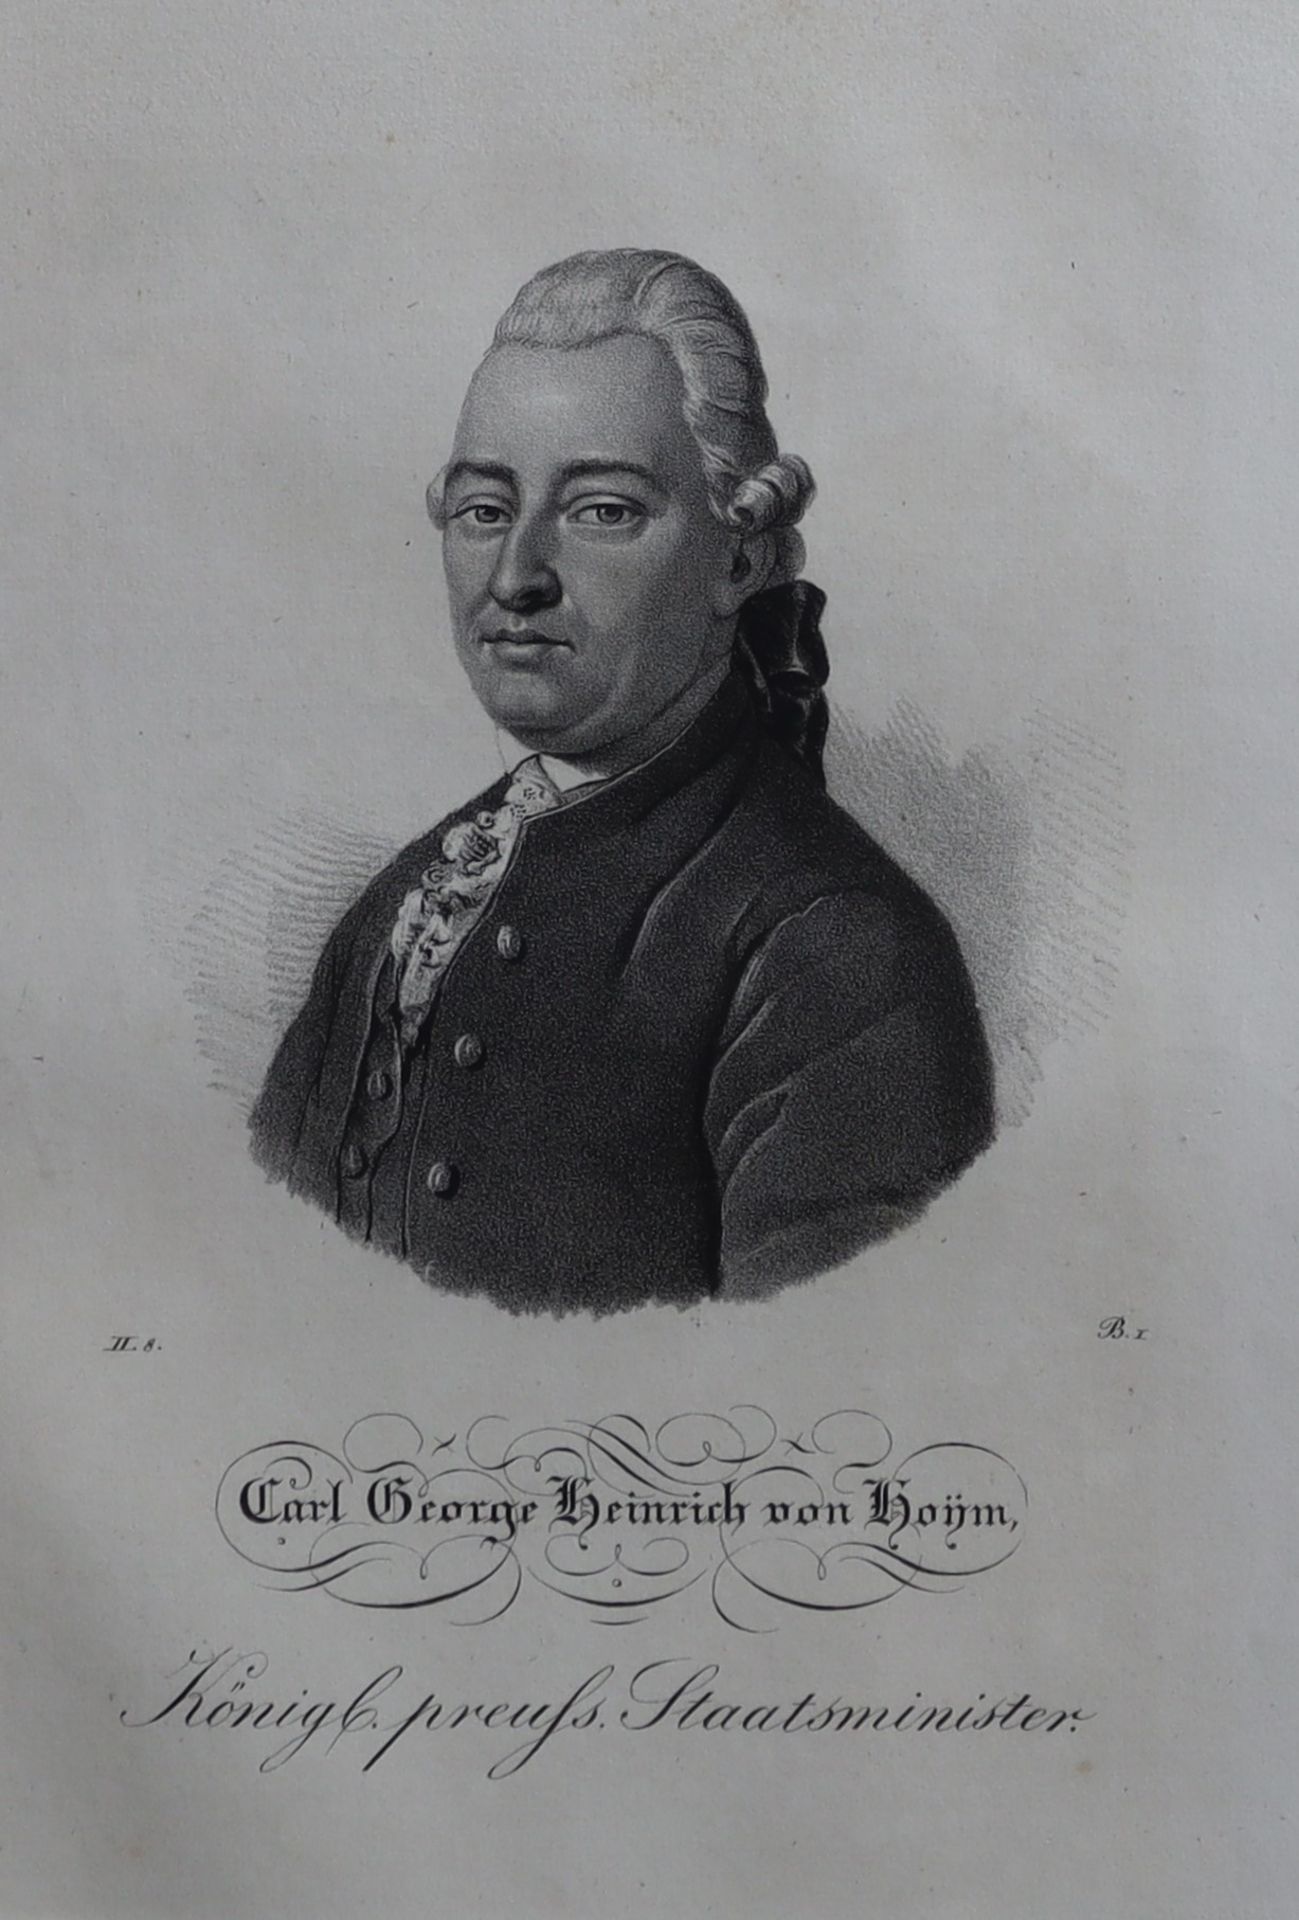 Lithografie aus Borussia 1839, "Carl George Heinrich von Hoym, Königl. preuss. Staatsminister"